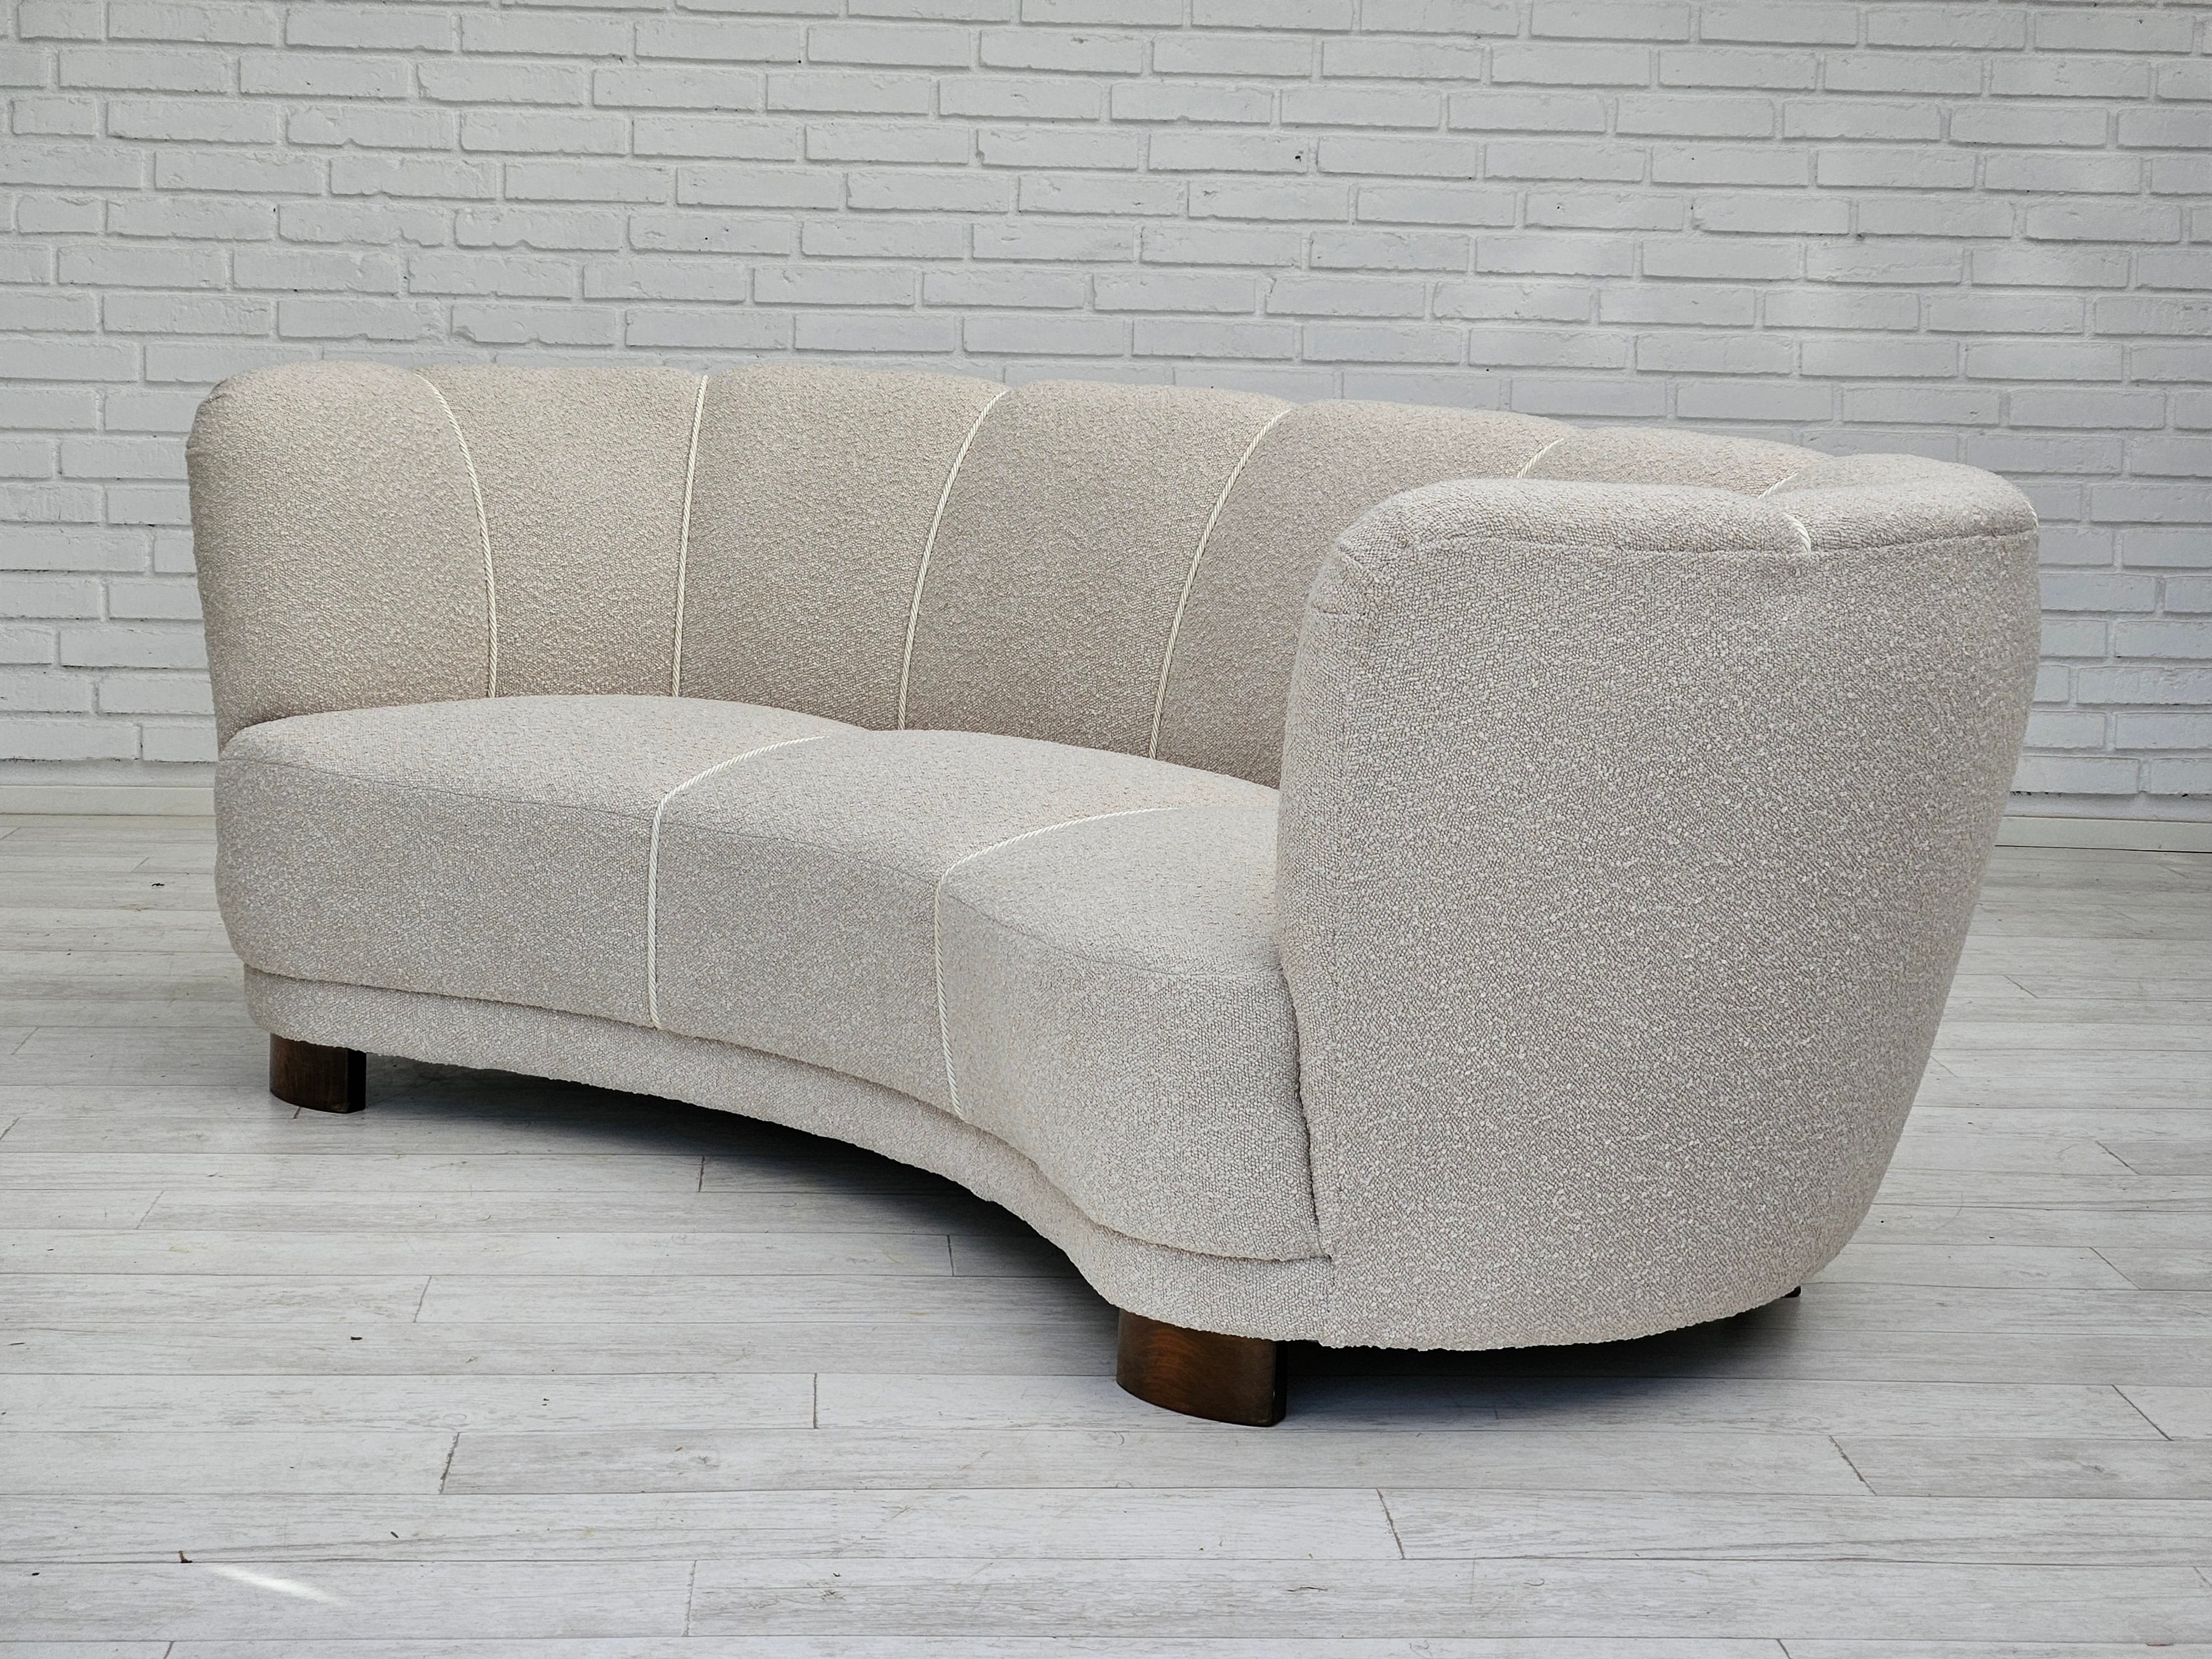 1960erne, Dansk design, renoveret 3 pers. "Banana" sofa, beige/creamy møbelstof.